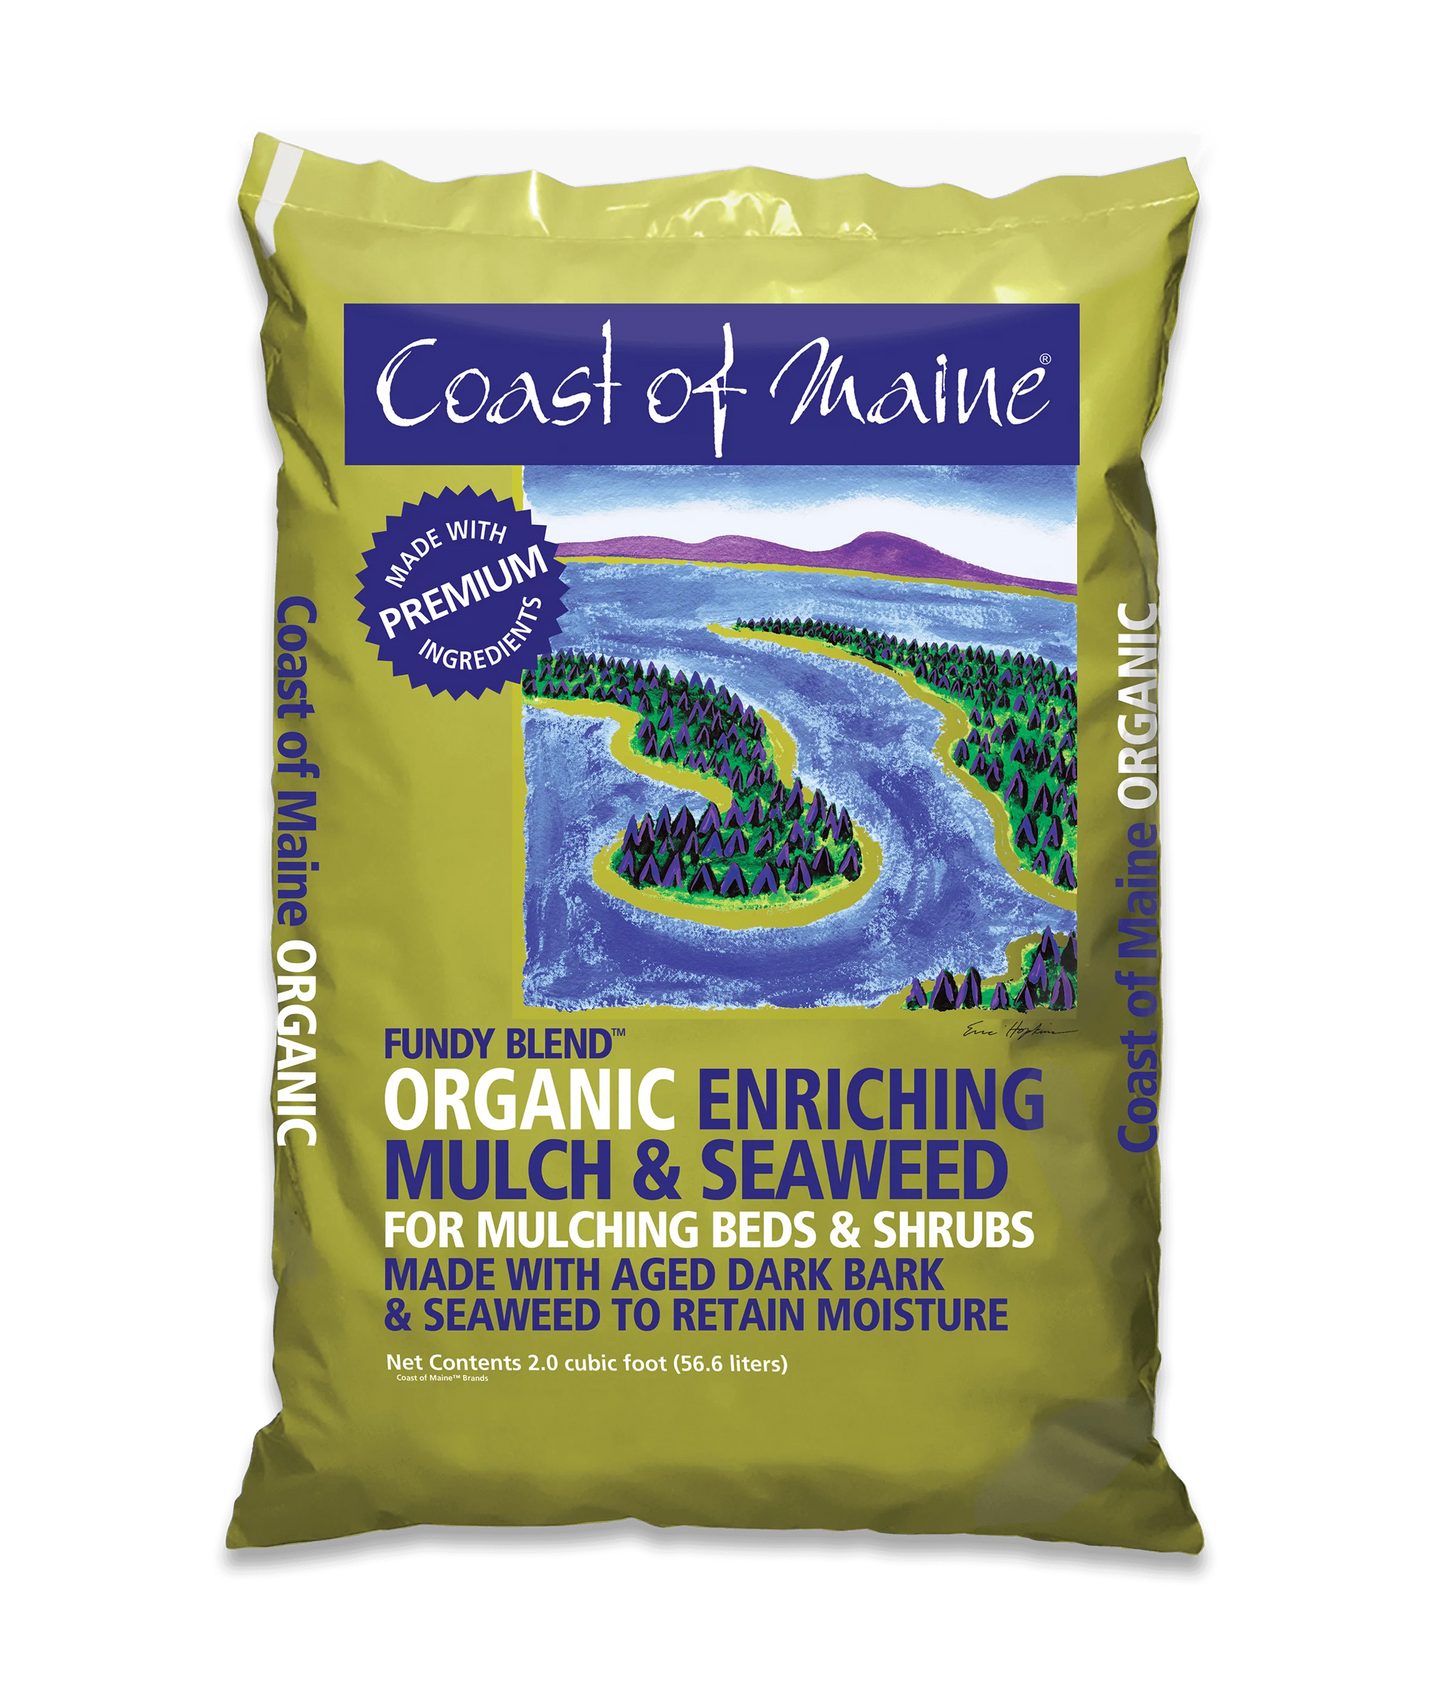 Organic Enriching Mulch & Seaweed